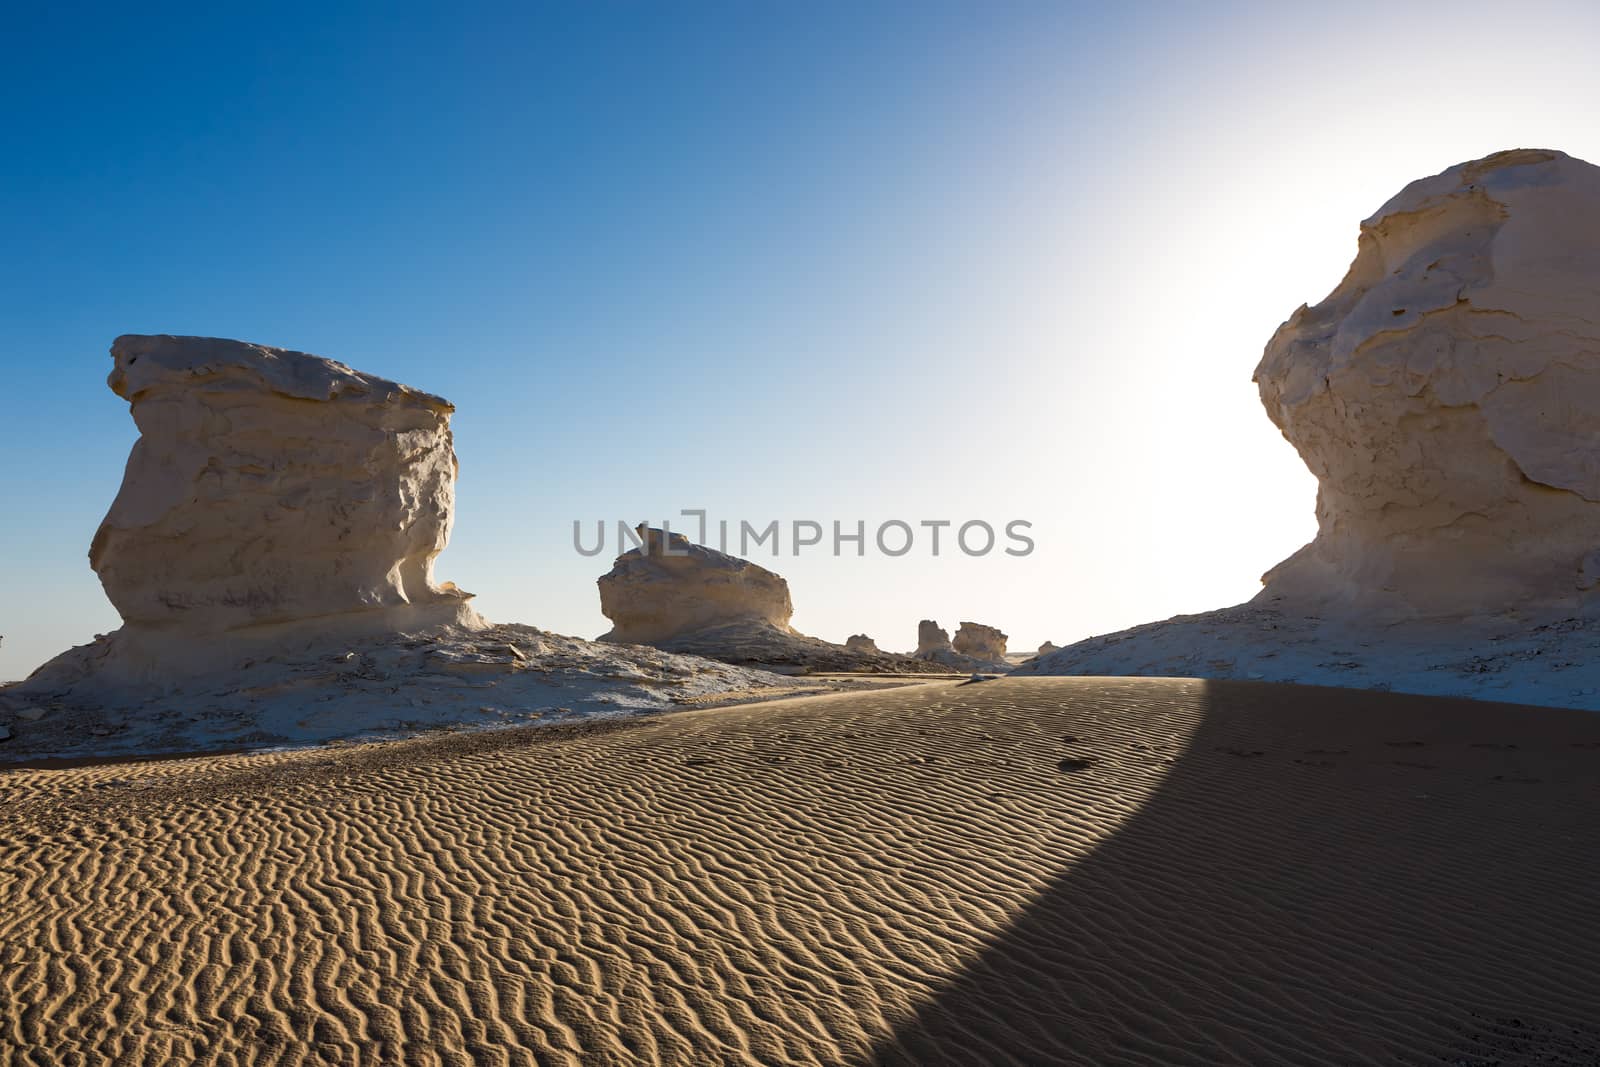 The White Desert at Farafra in the Sahara of Egypt. by SeuMelhorClick